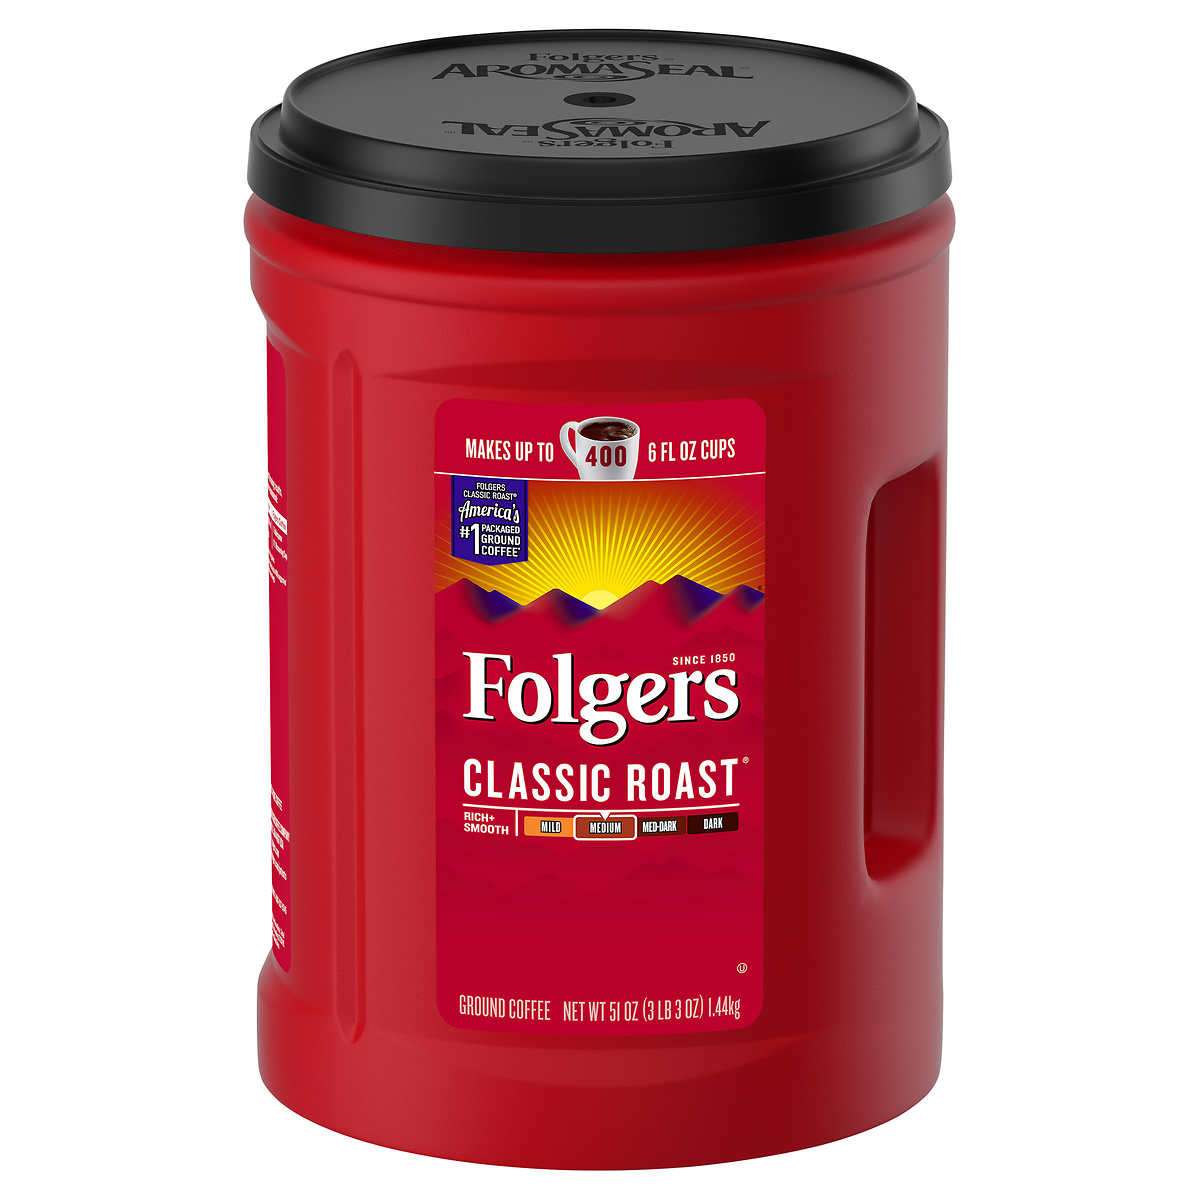 Folgers Classic Roast Coffee, Medium Roast, 51 oz New